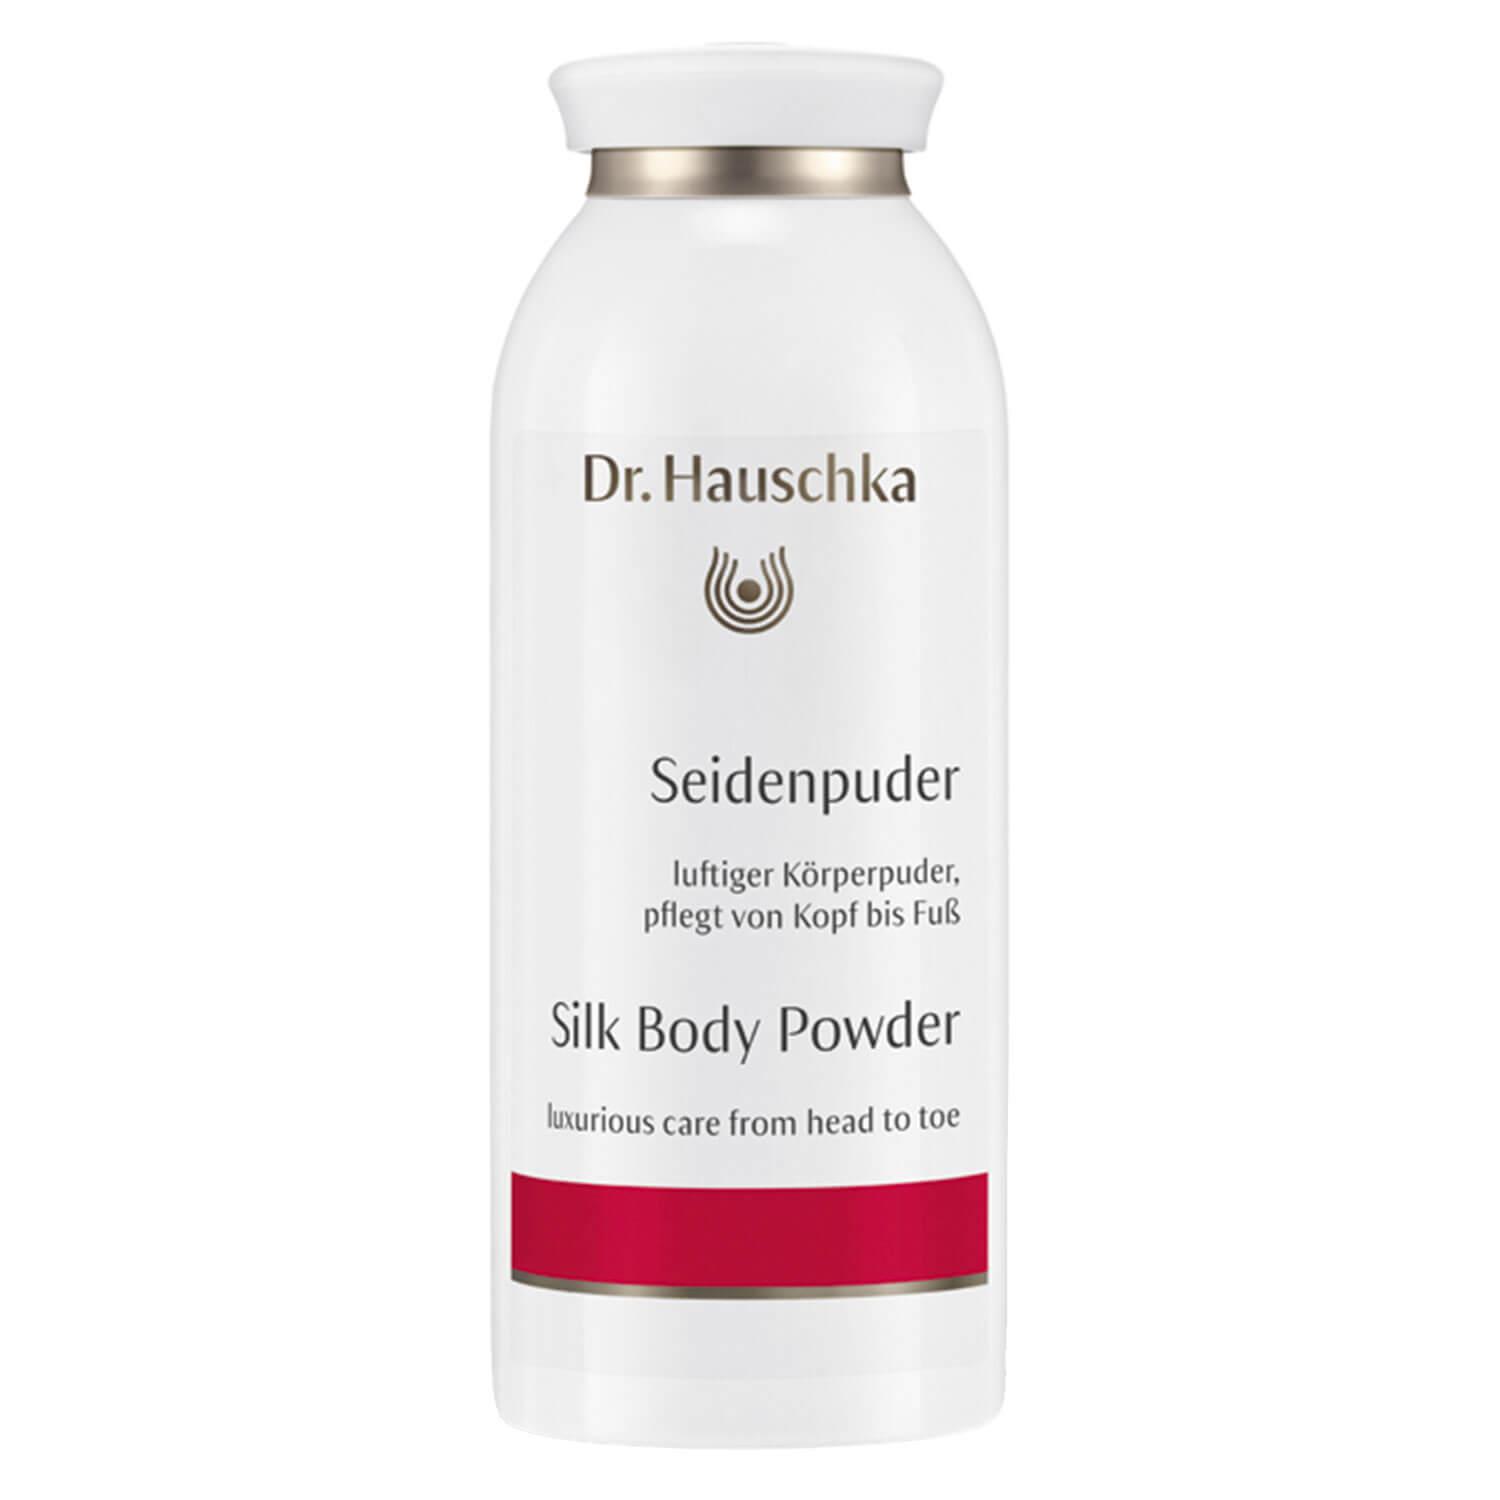 Dr. Hauschka - Seidenpuder